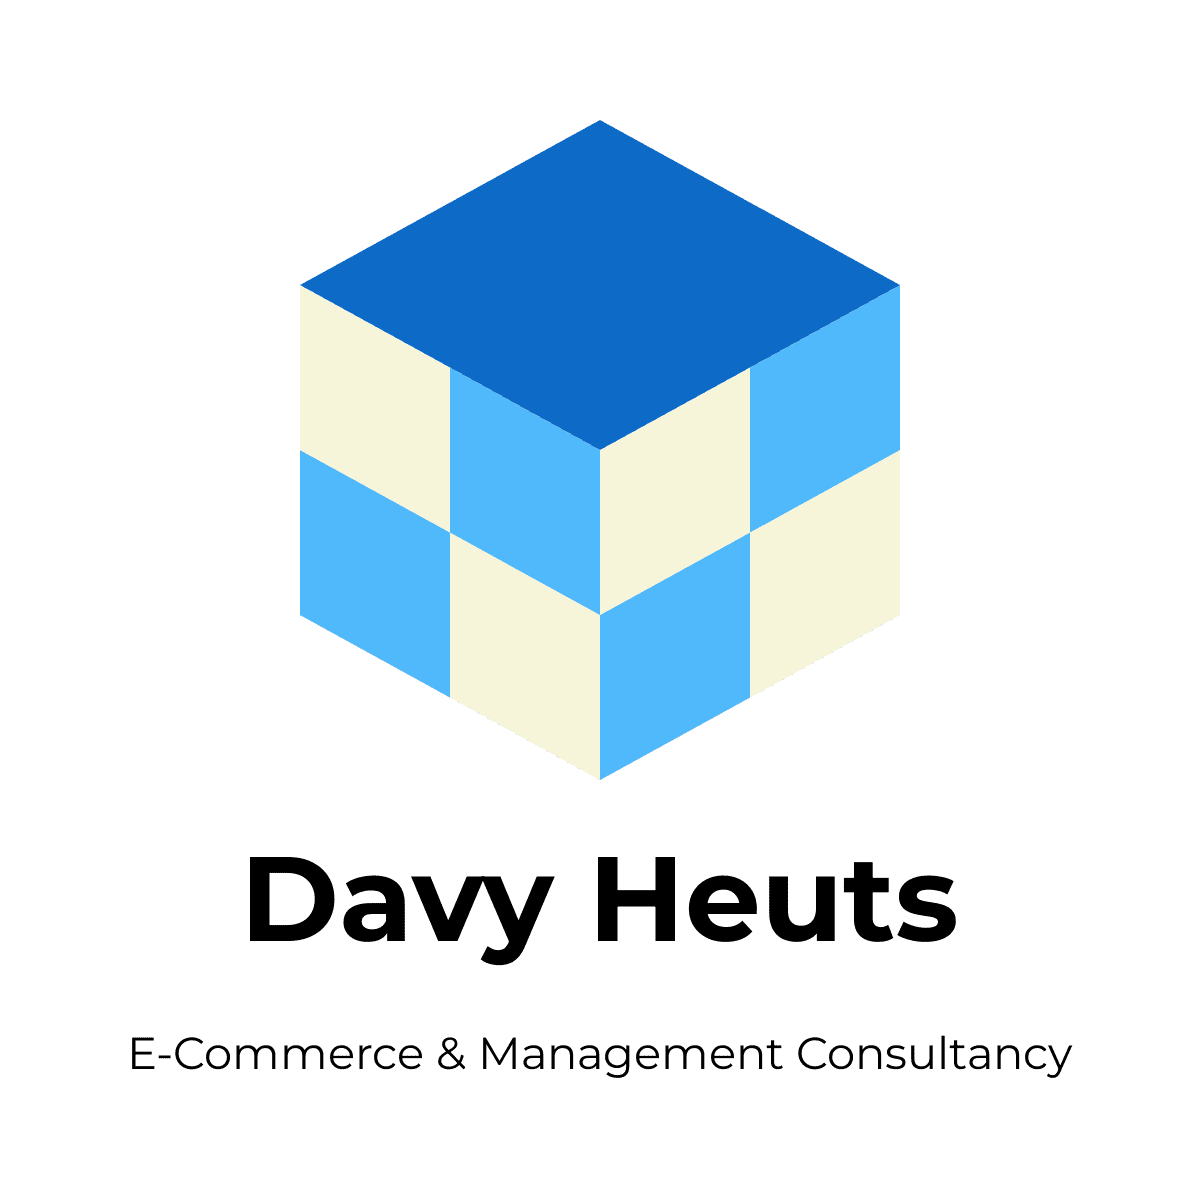 Davy Heuts – E-Commerce & Management